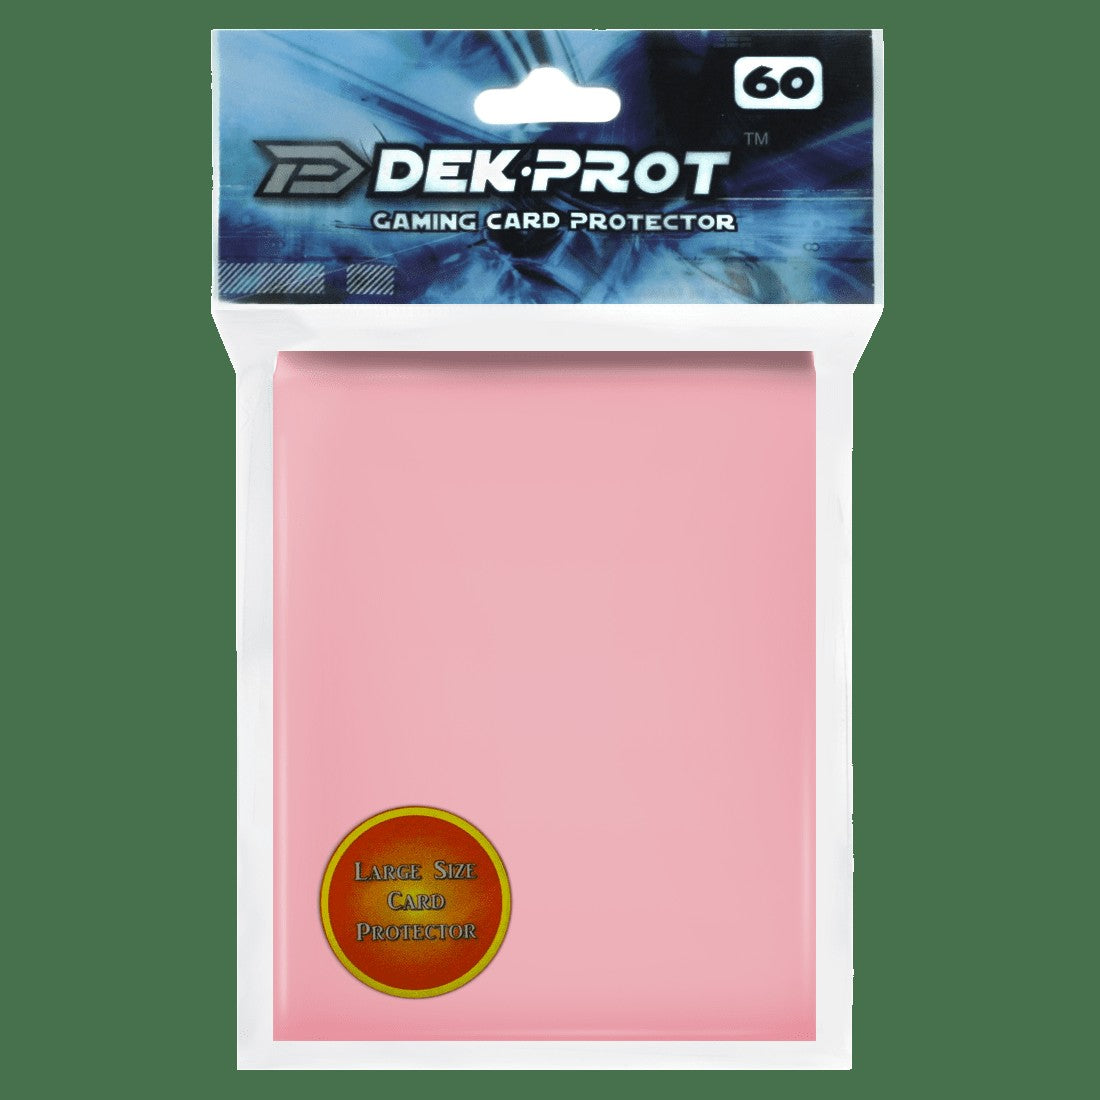 Dek Prot Standard Sized Card Sleeves - Coral Pink (60 Card Sleeves)